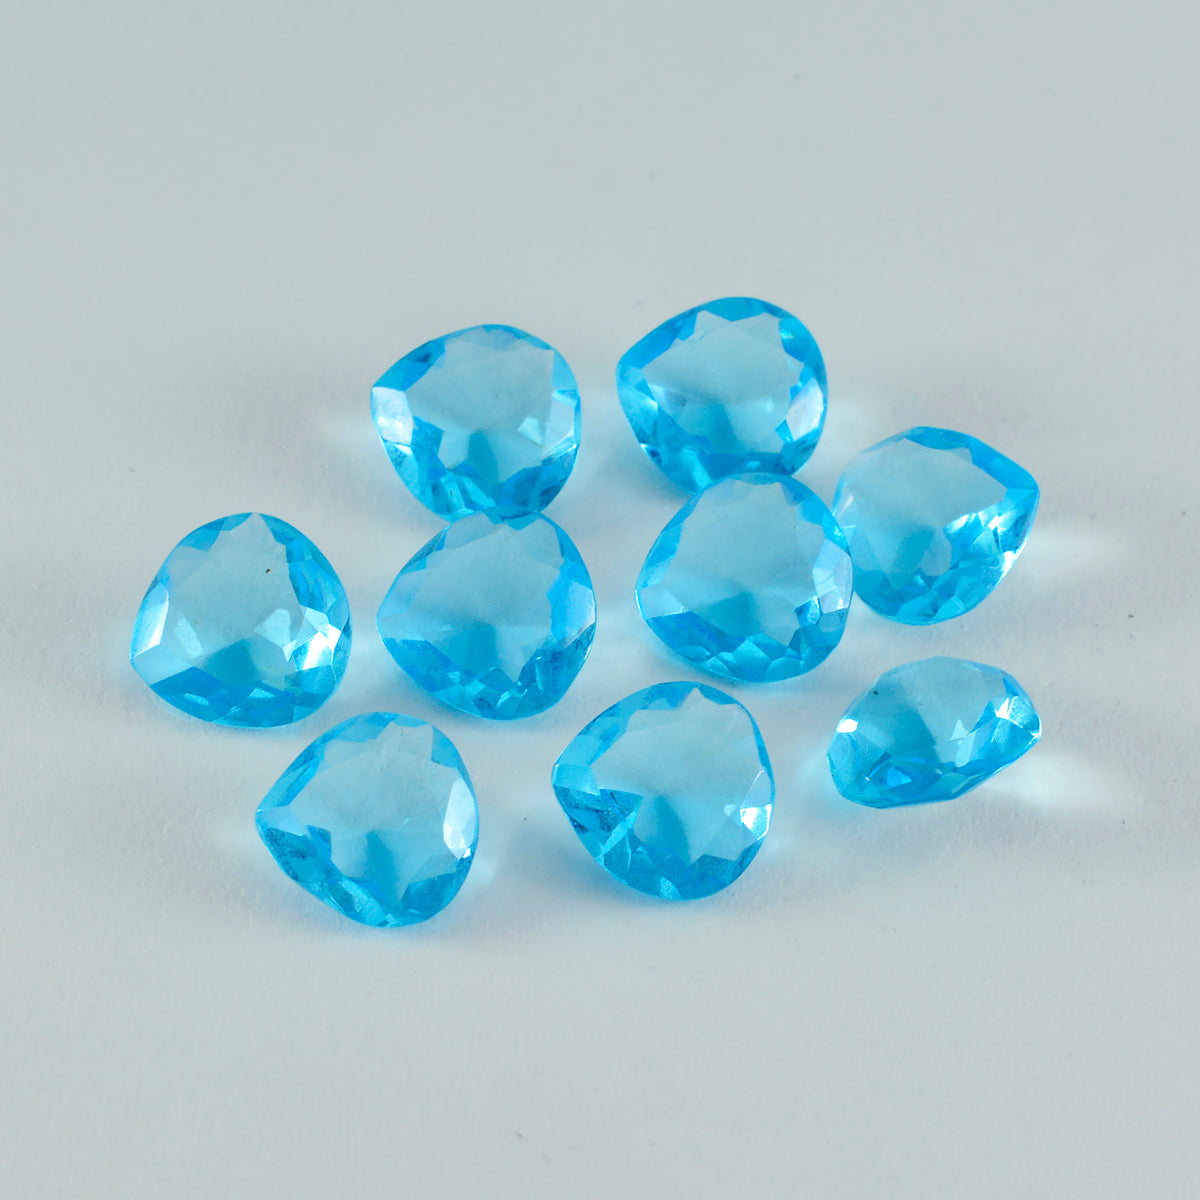 Riyogems 1PC Blue Topaz CZ gefacetteerde 9x9 mm hartvorm verbazingwekkende kwaliteit losse steen